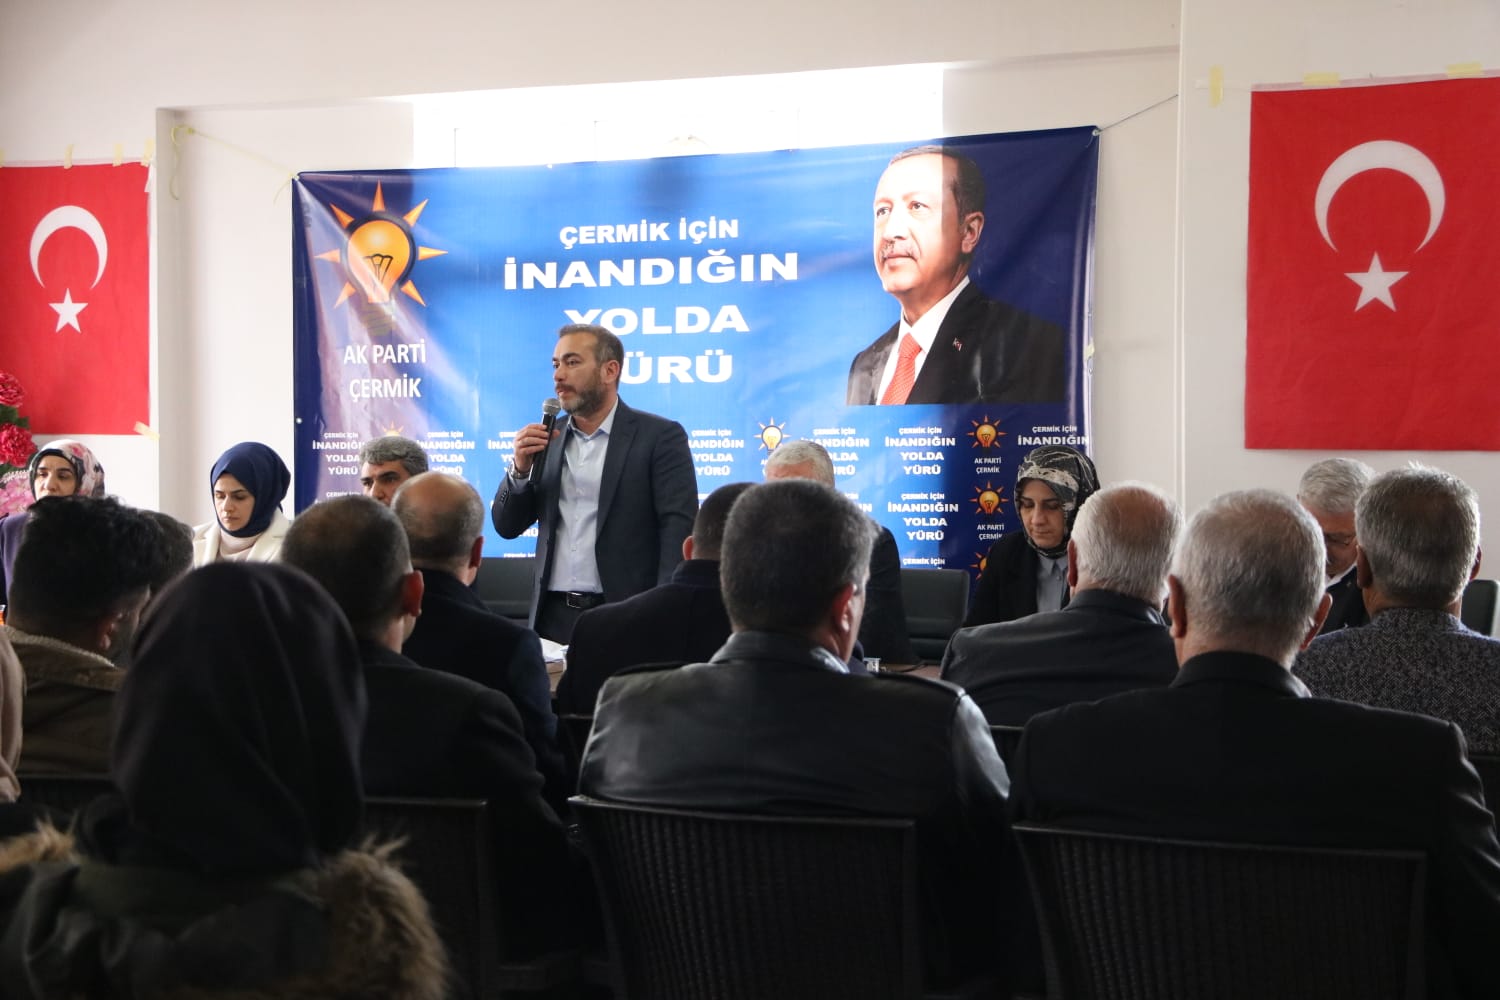 AK Parti Diyarbakır İl Teşkilatı, Çermik’te